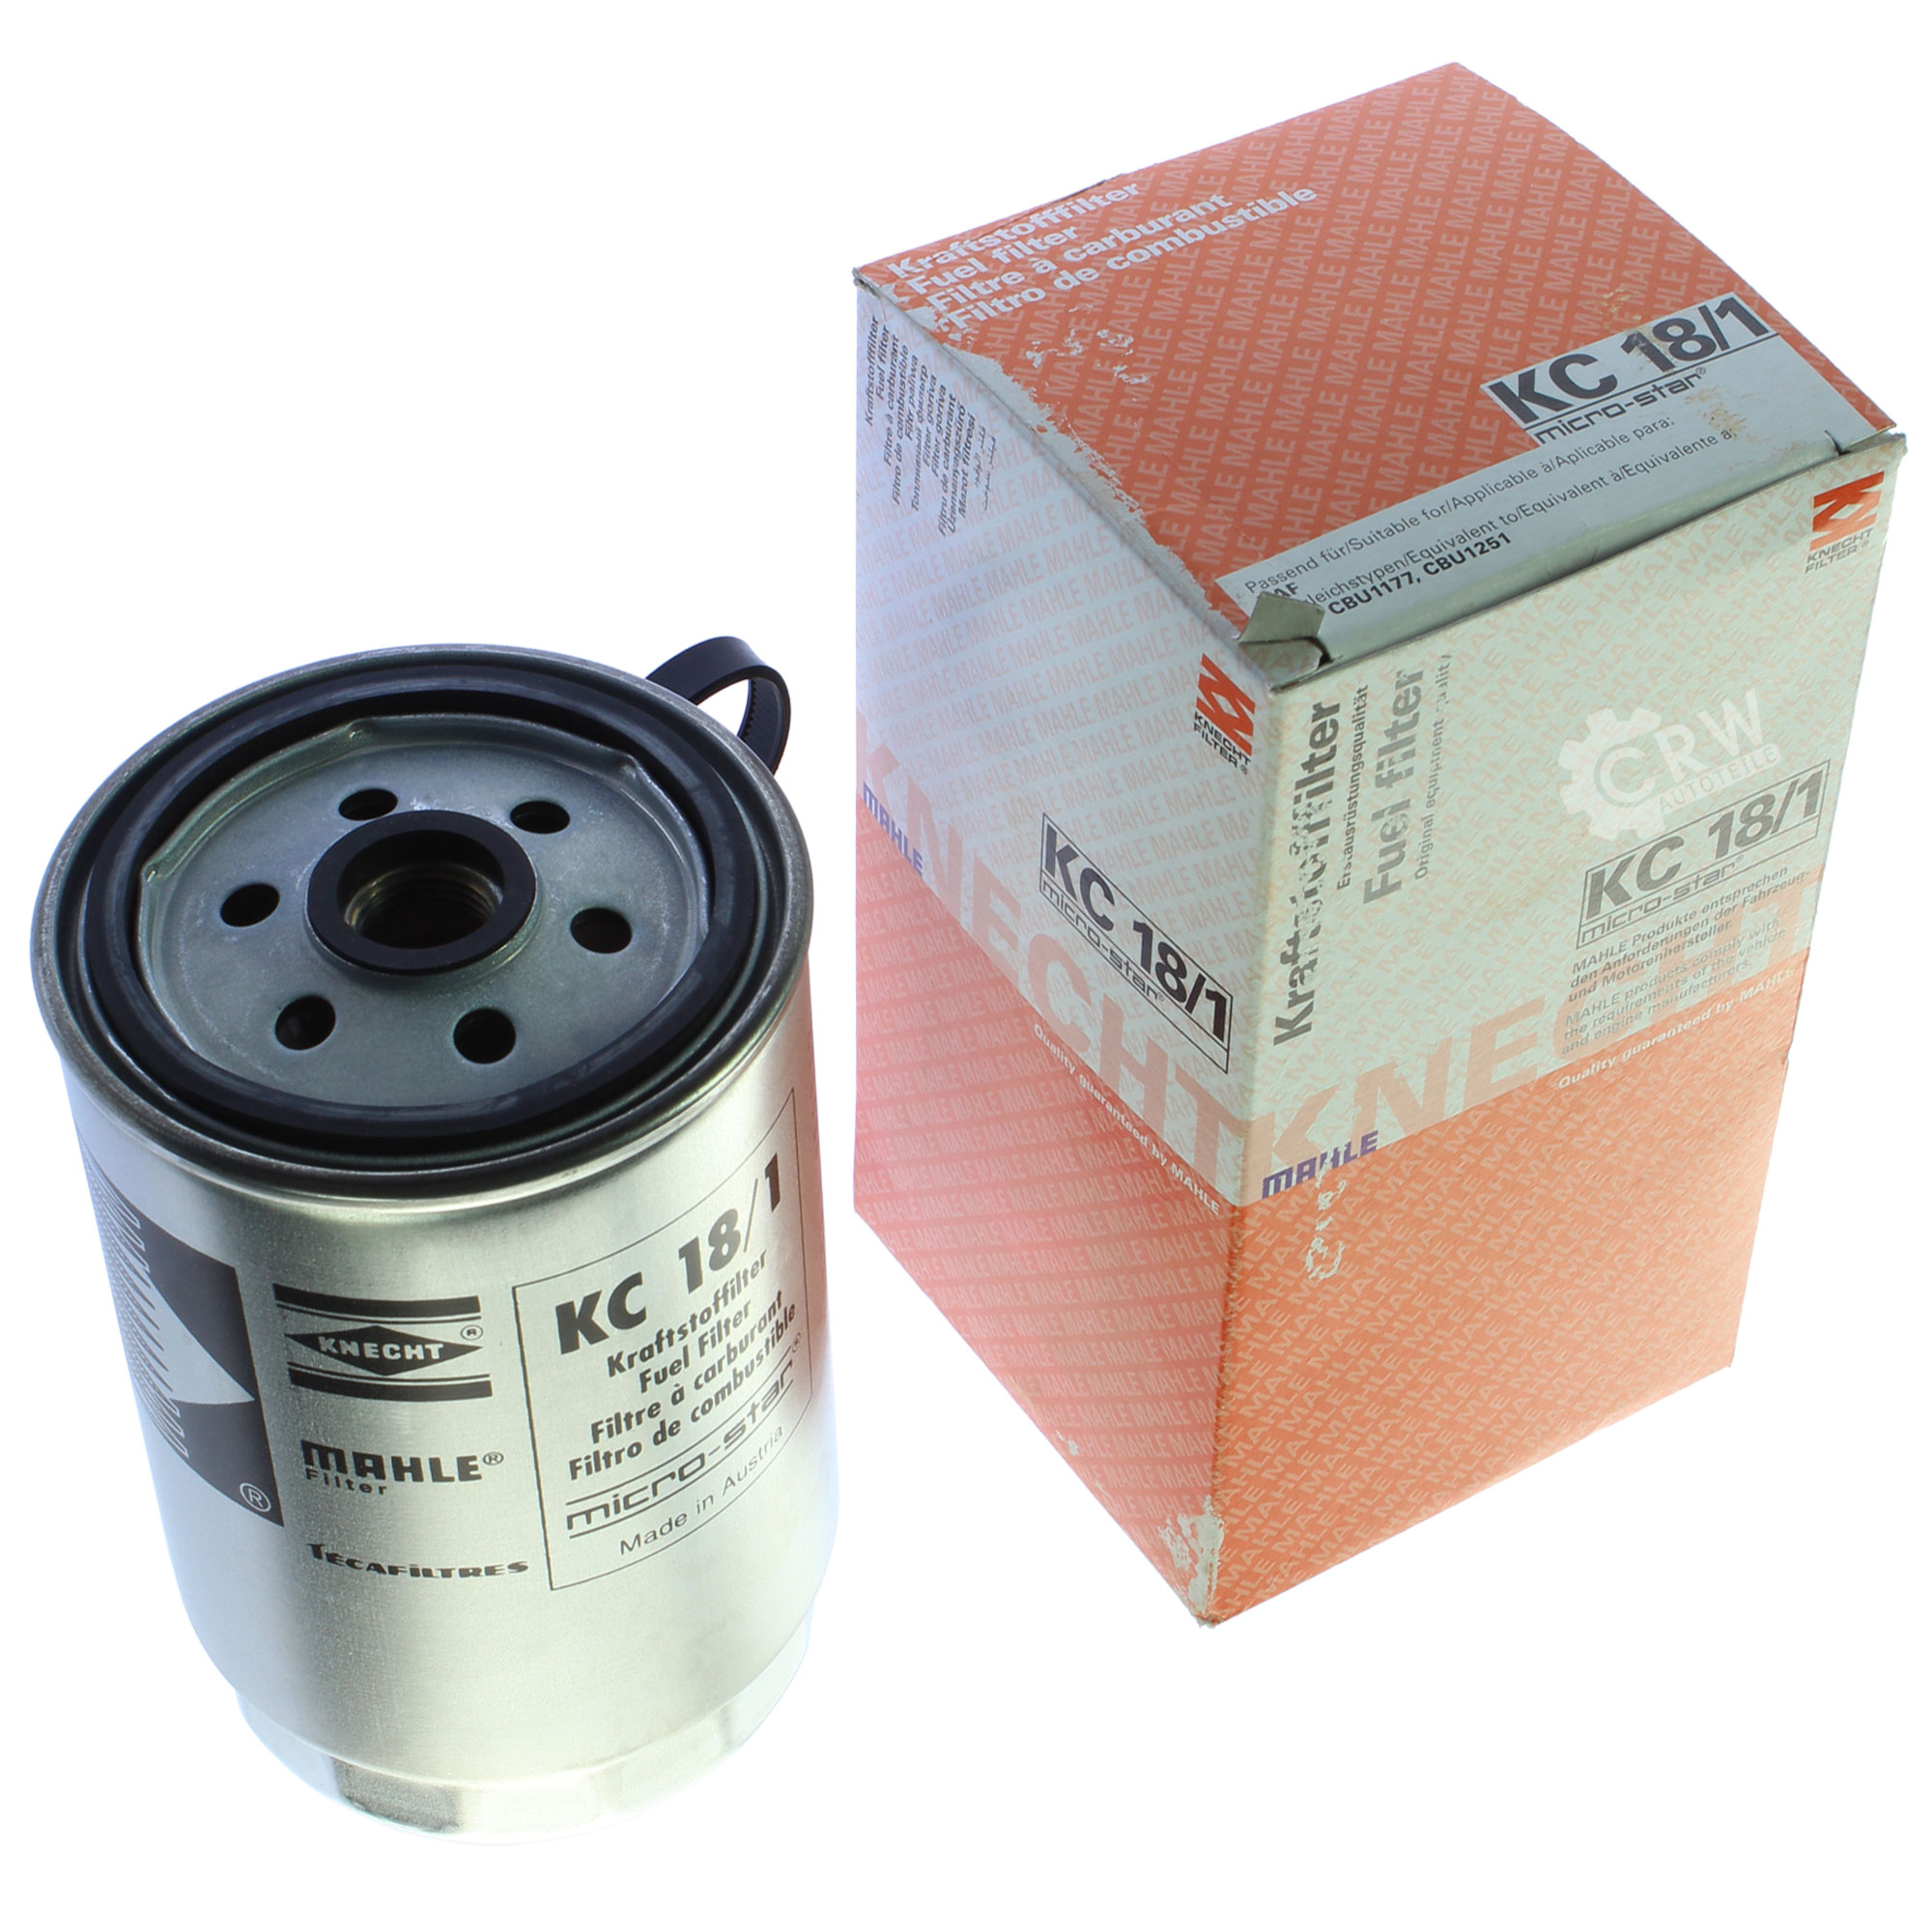 MAHLE / KNECHT KC 18/1 Kraftstofffilter Filter Fuel